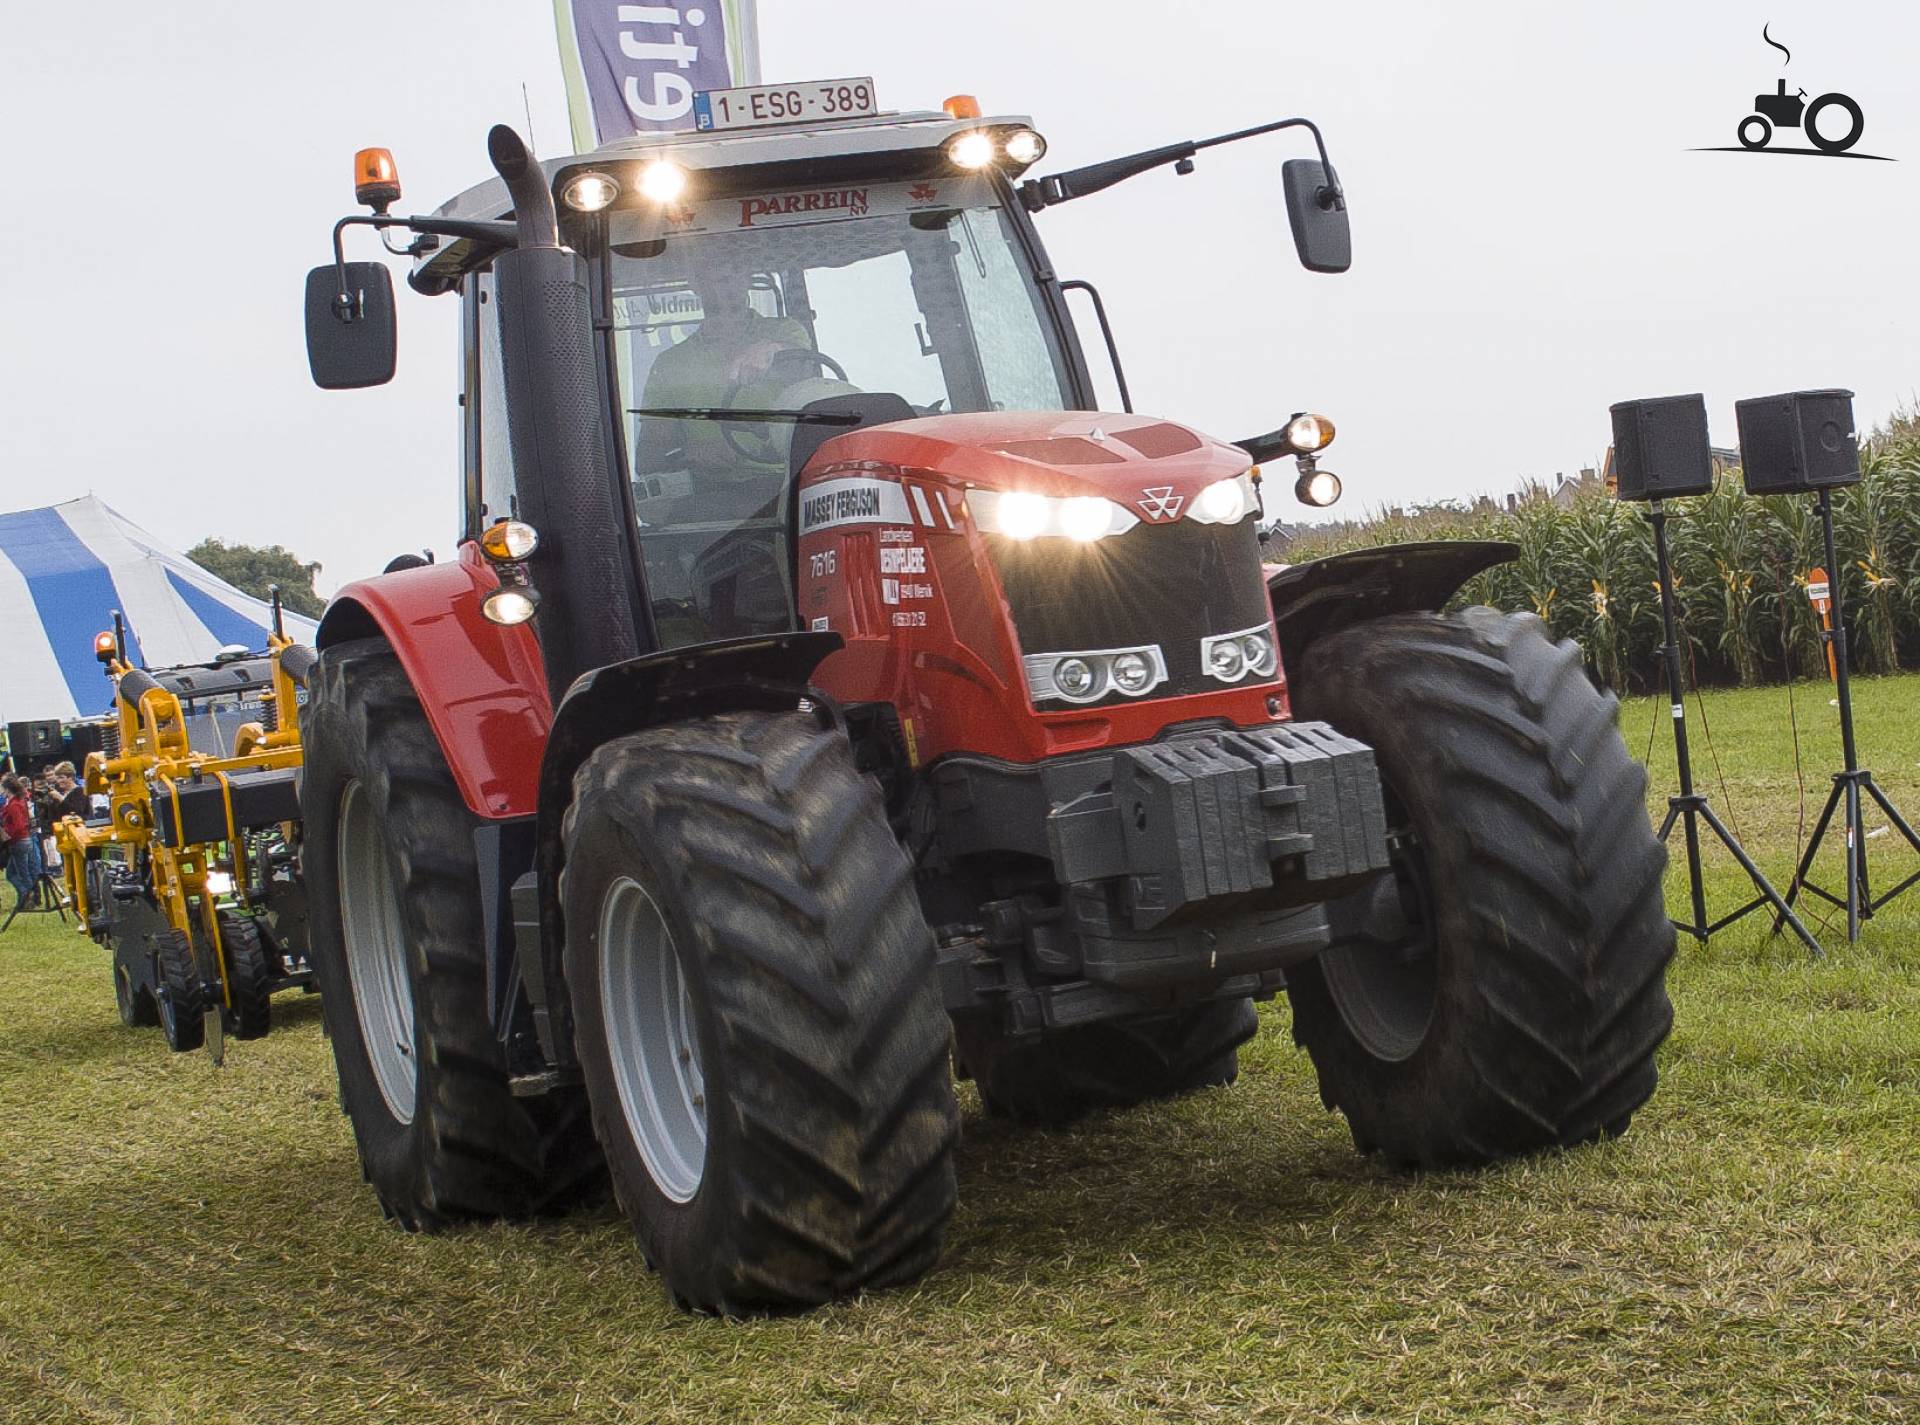 zdj-cie-traktor-mf-7616-id-629333-galeria-rolnicza-agrofoto